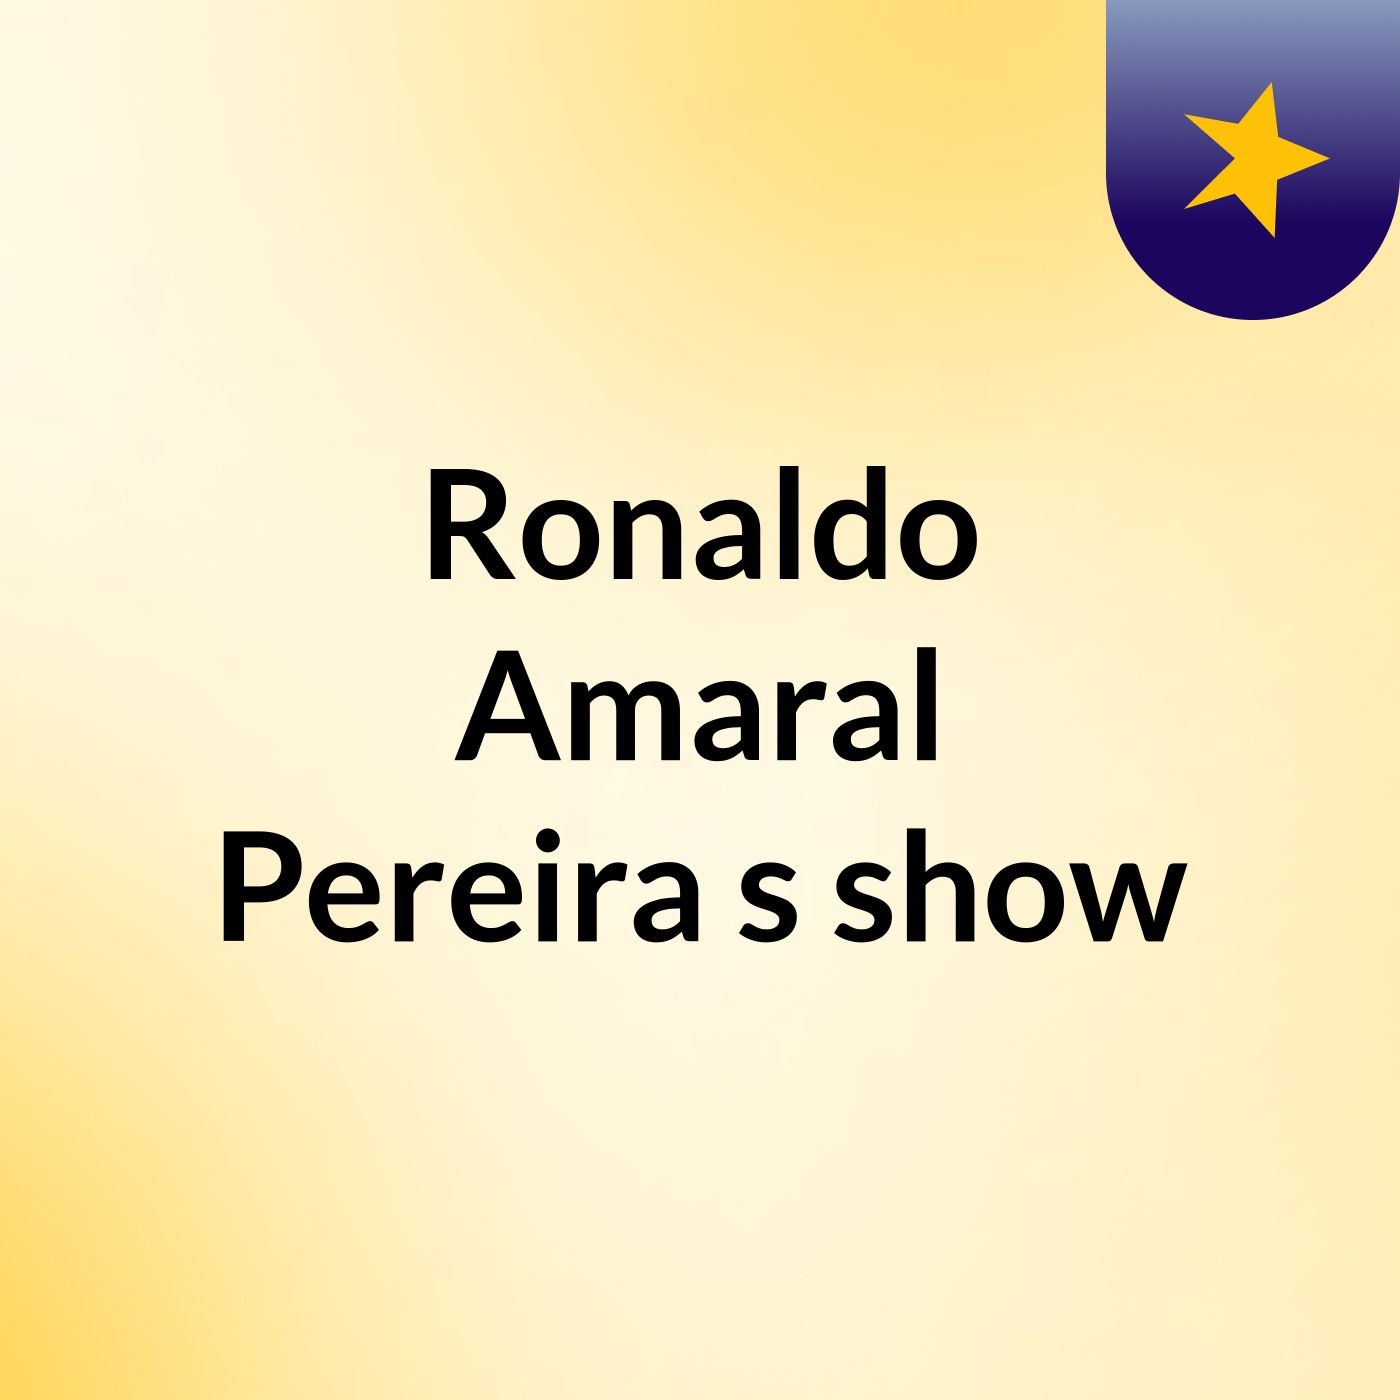 Ronaldo Amaral Pereira's show